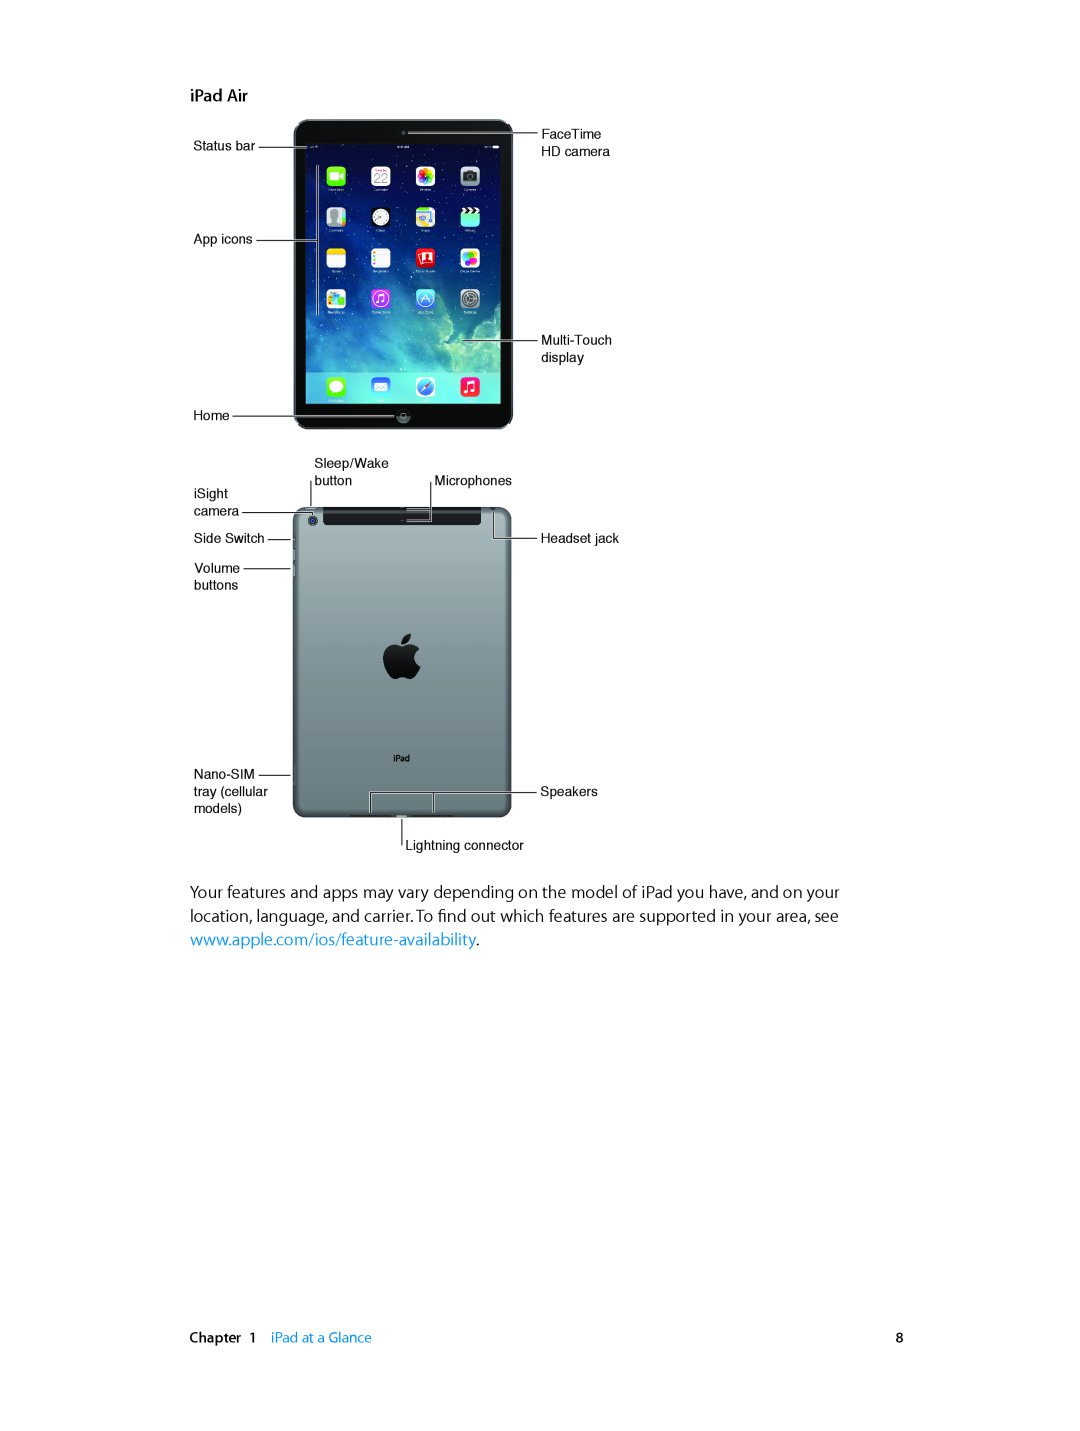 Apple MF544LL/A, MF519LL/A, MF116LL/A, MF123LL/A, ME860LL/A, MF066LL/A, MF074LL/A, ME856LL/A manual iPad Air, iPad at a Glance 